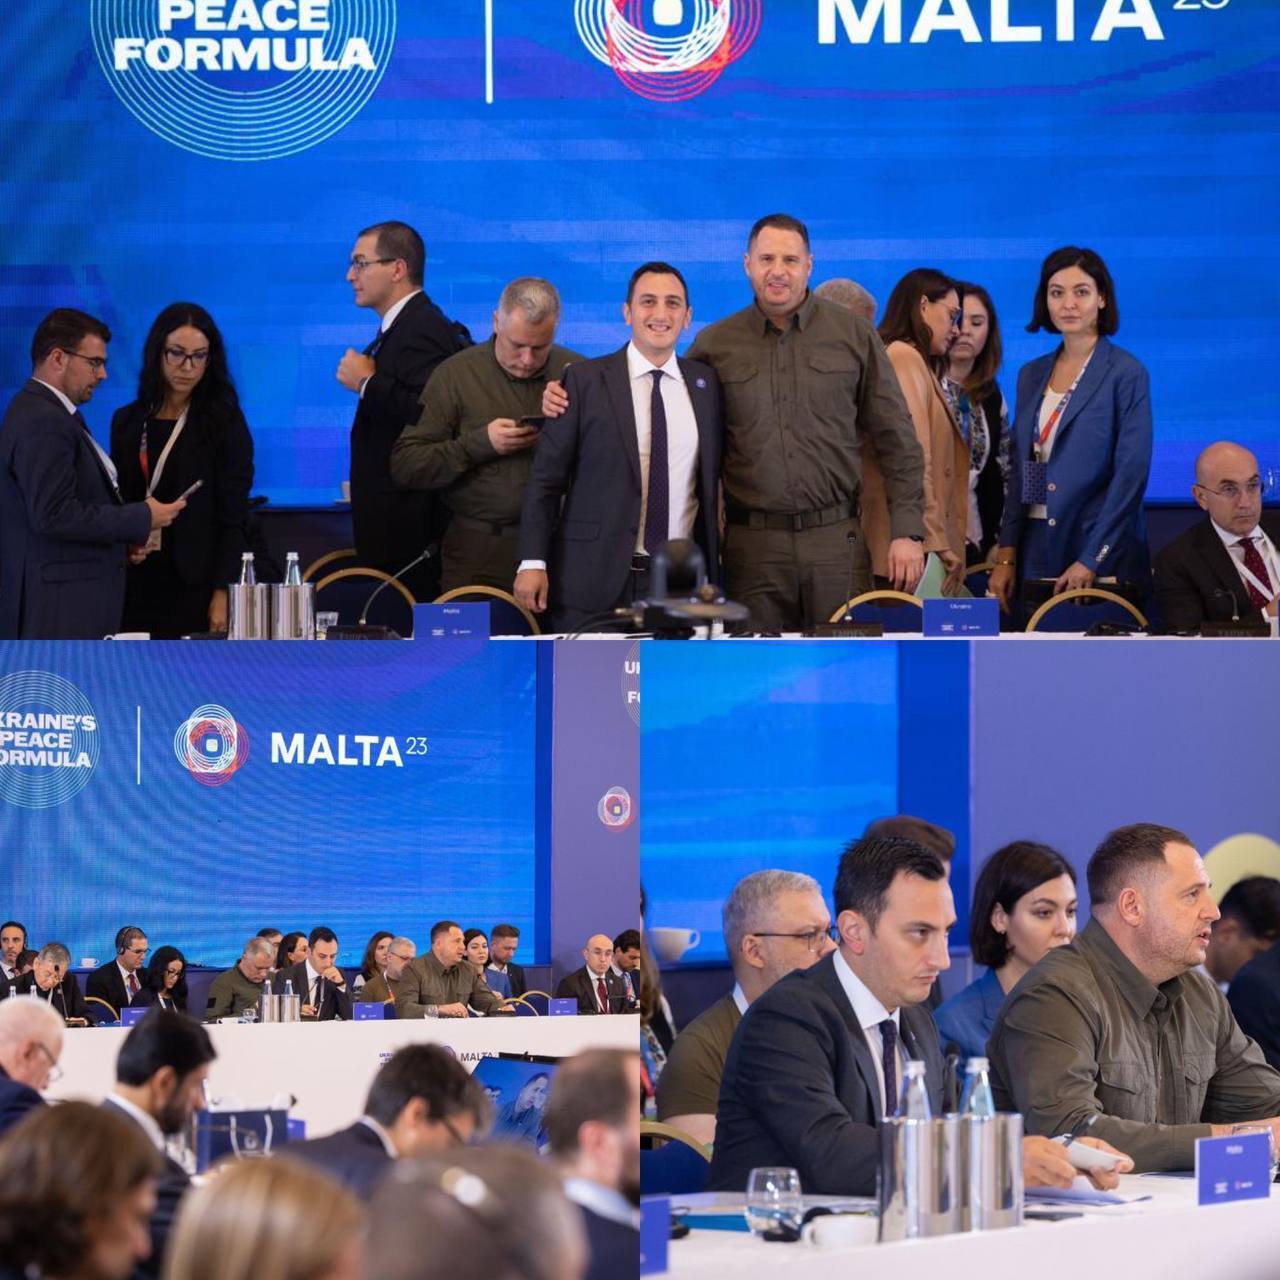 Коалиция по возвращению похищенных РФ детей и ядерная безопасность: на Мальте прошла международная встреча по украинской Формуле мира. Все детали